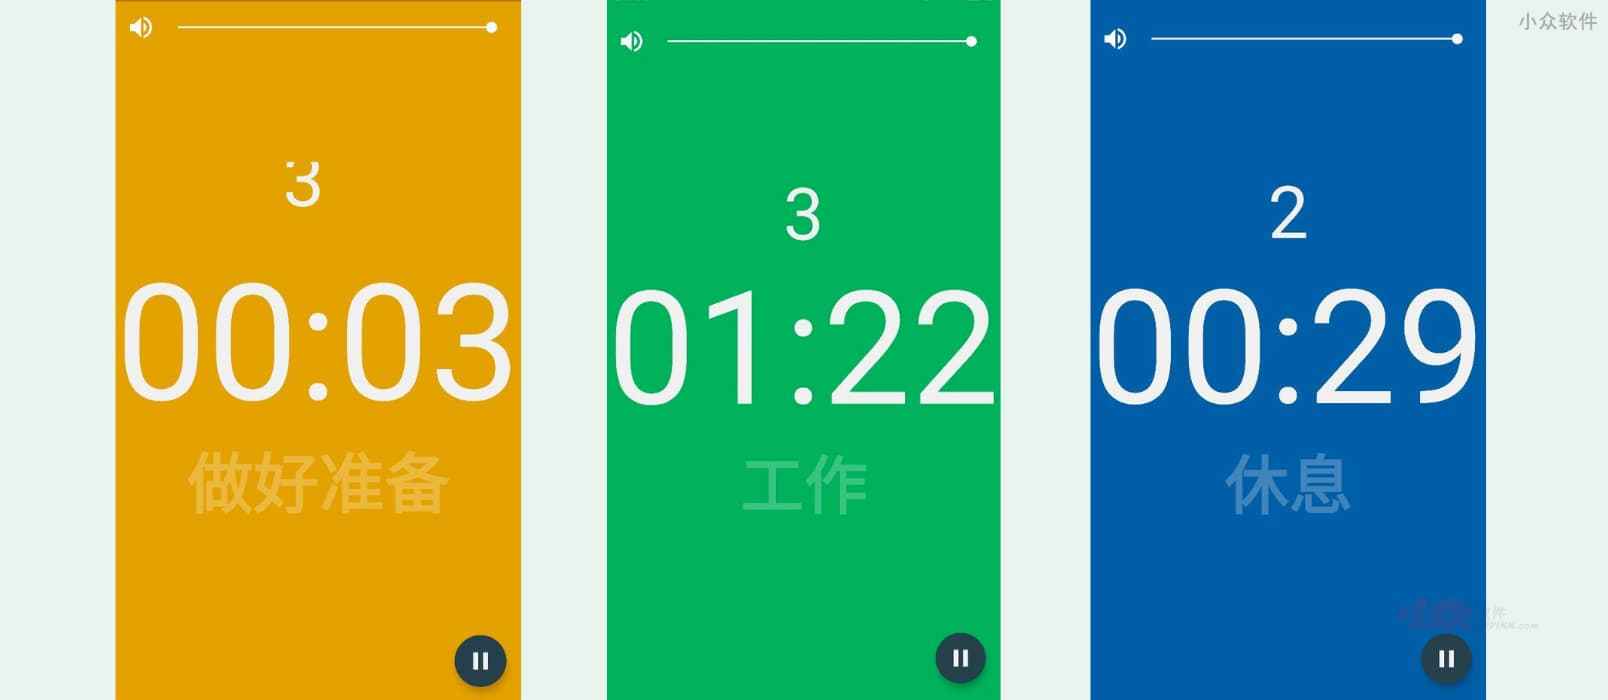 Interval Timer - 简洁、大屏、大字，接近满分的间隔计时器[Android] 1